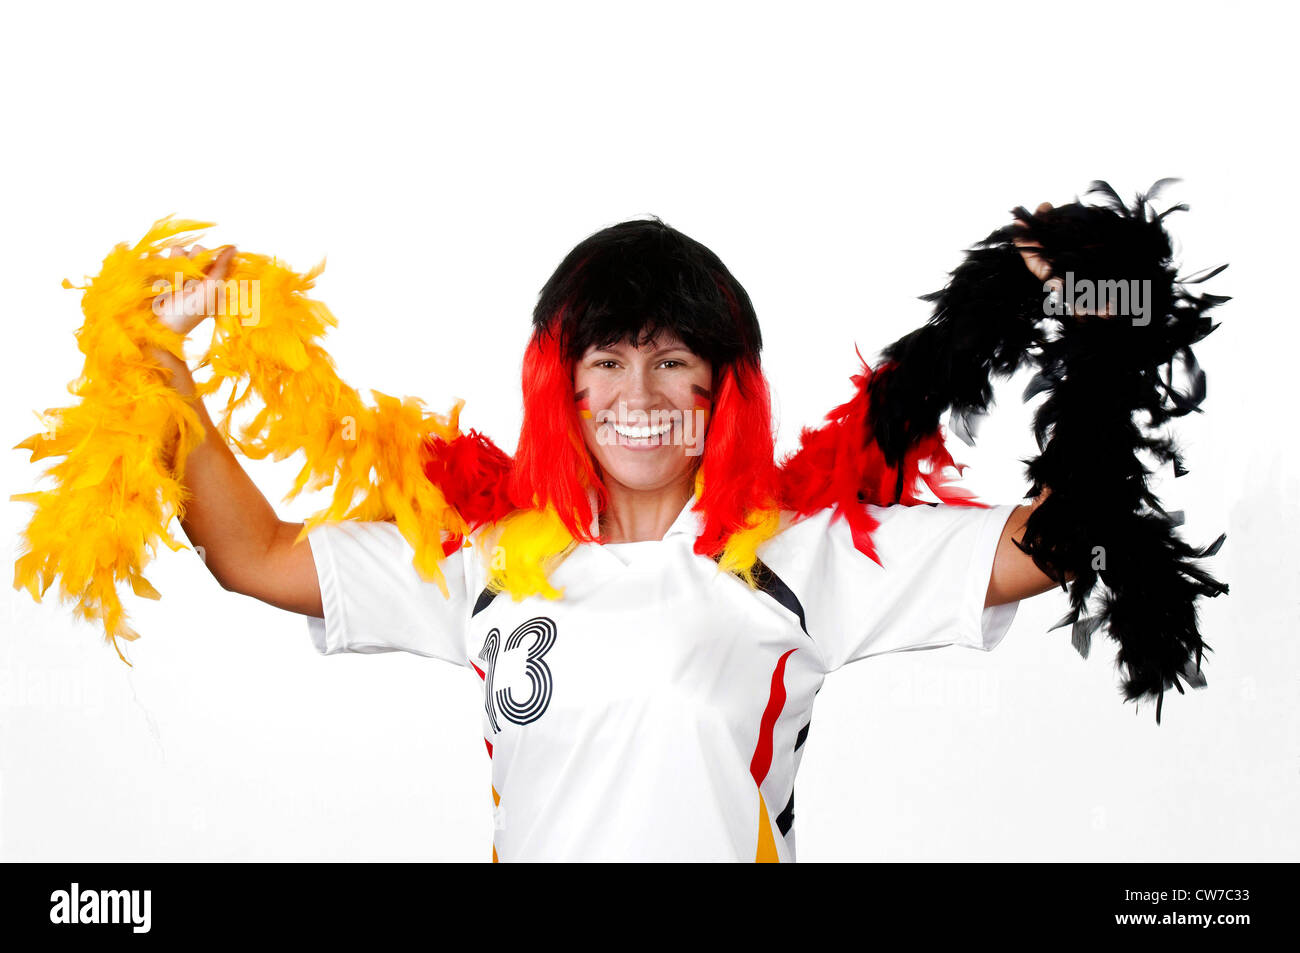 female German soccer fan, Germany Stock Photo